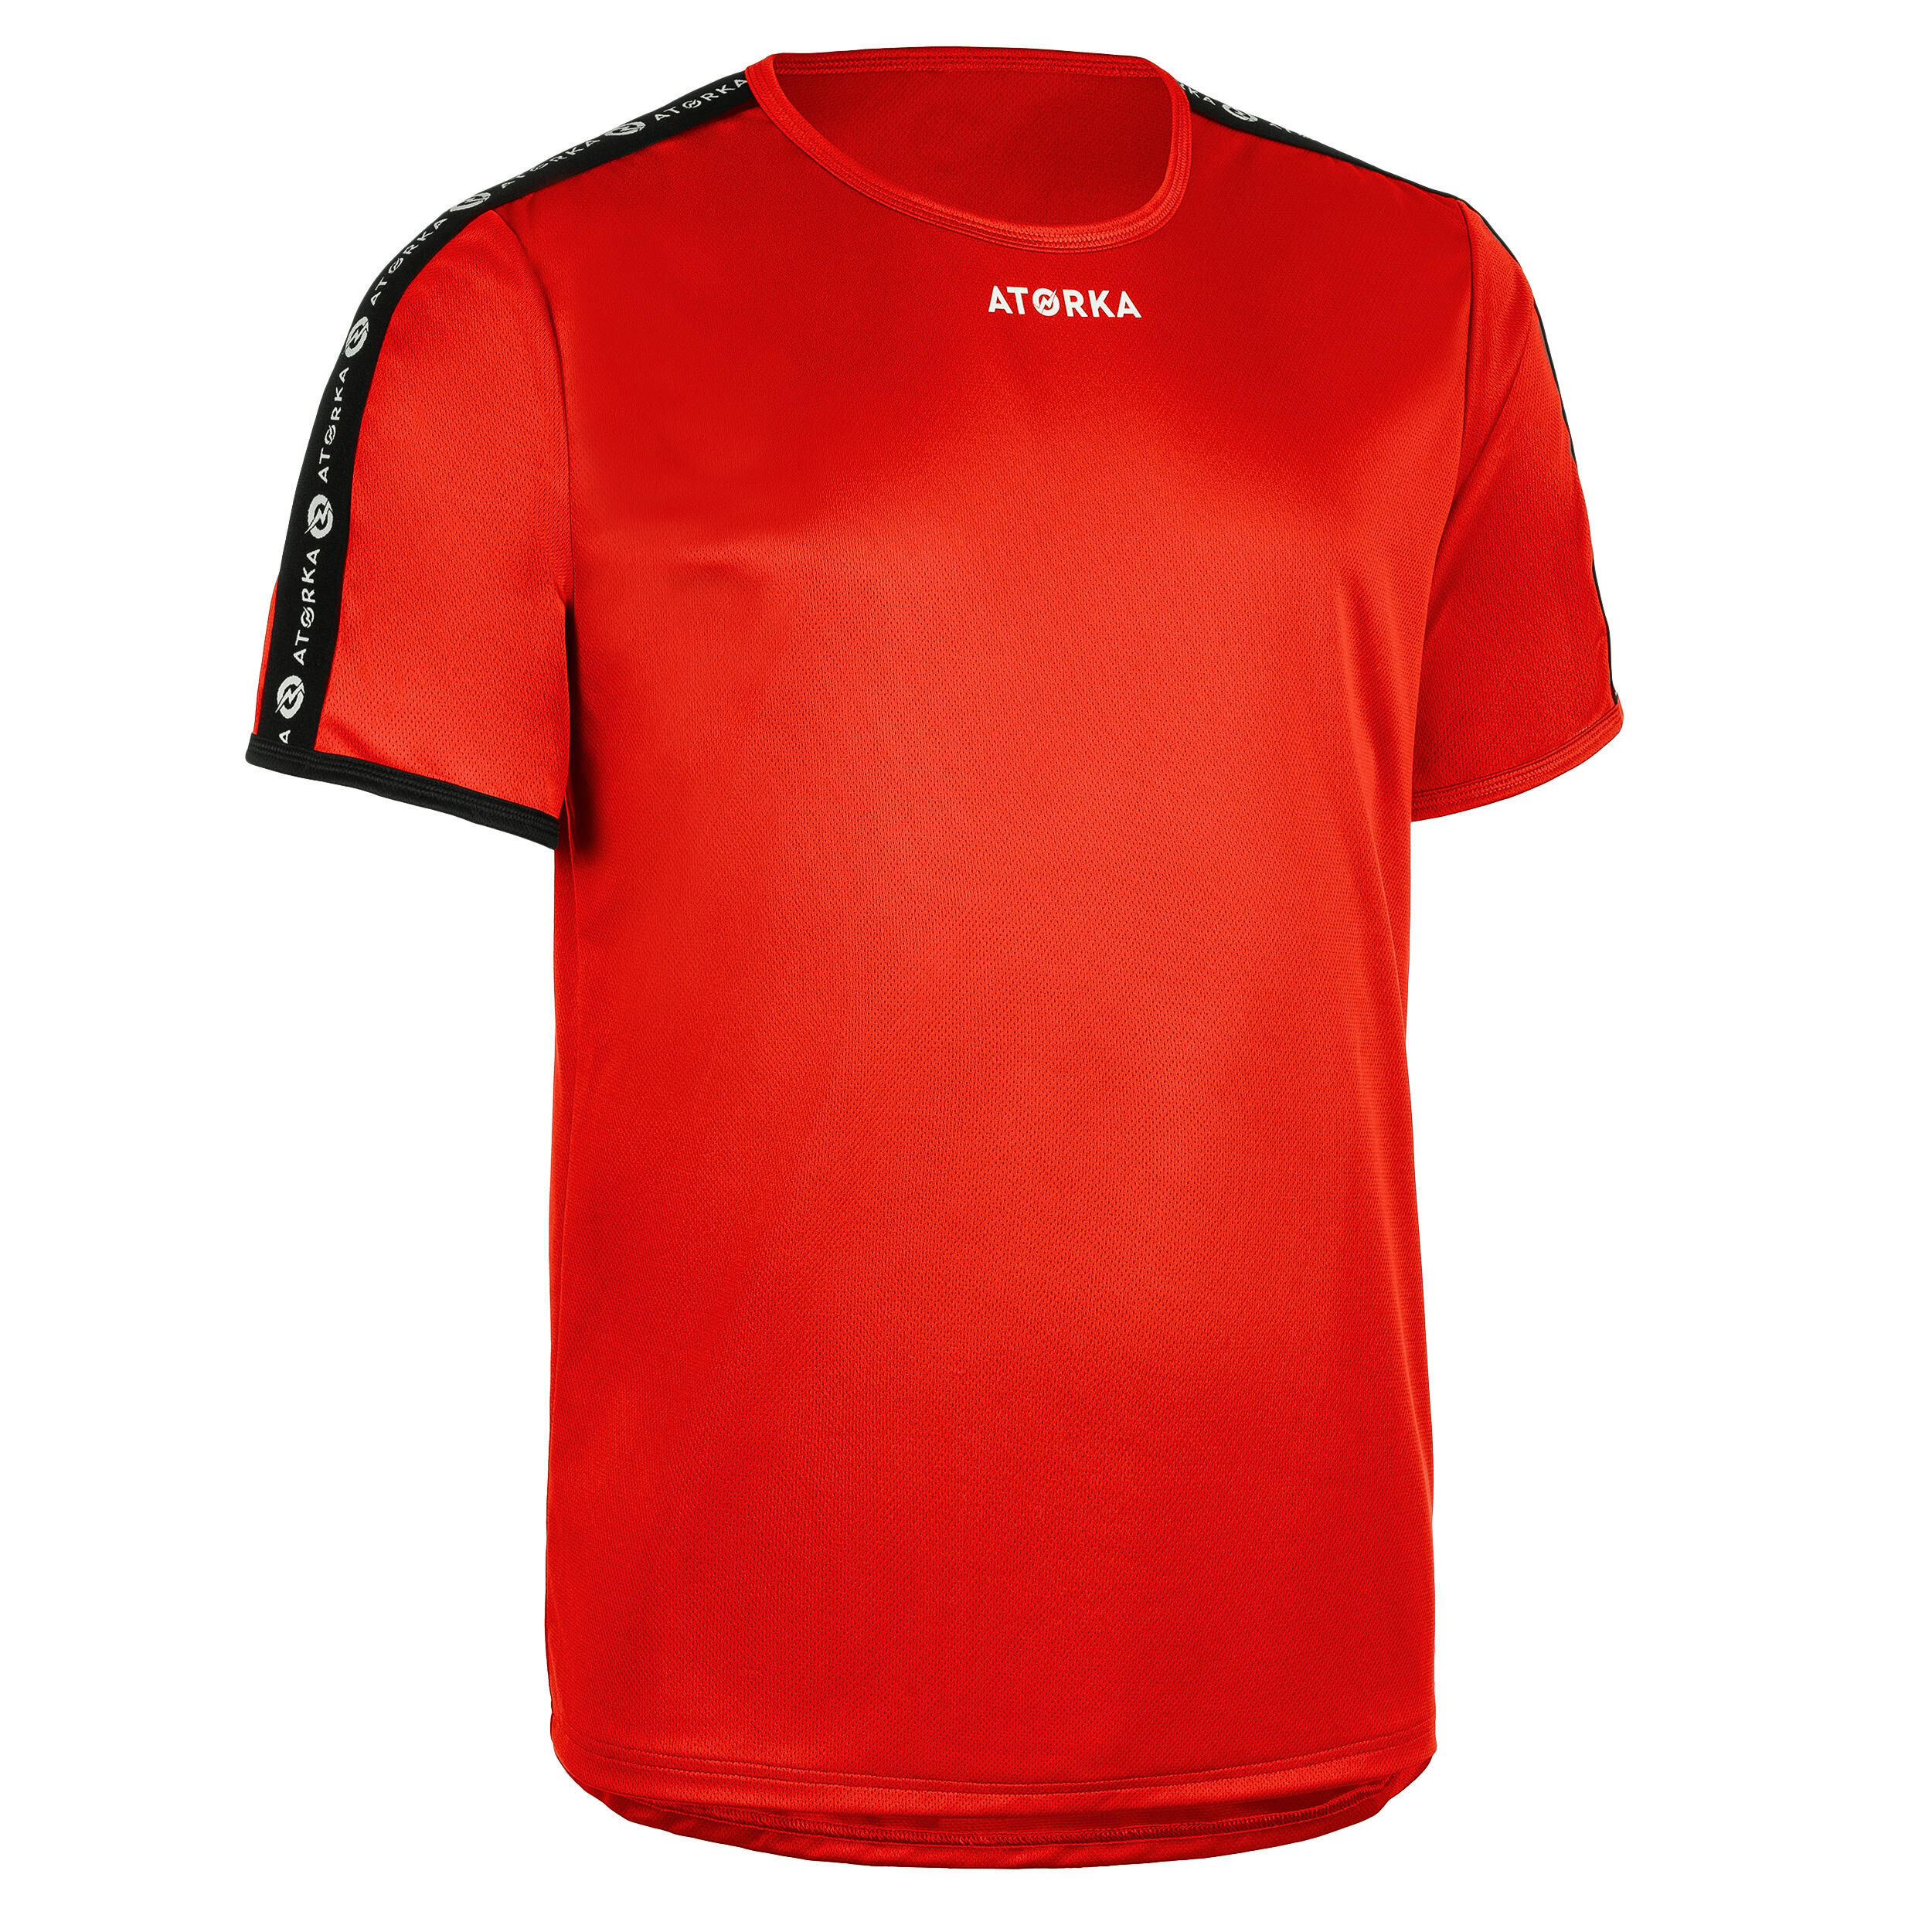 ATORKA H100C Short-Sleeved Handball Top - Red